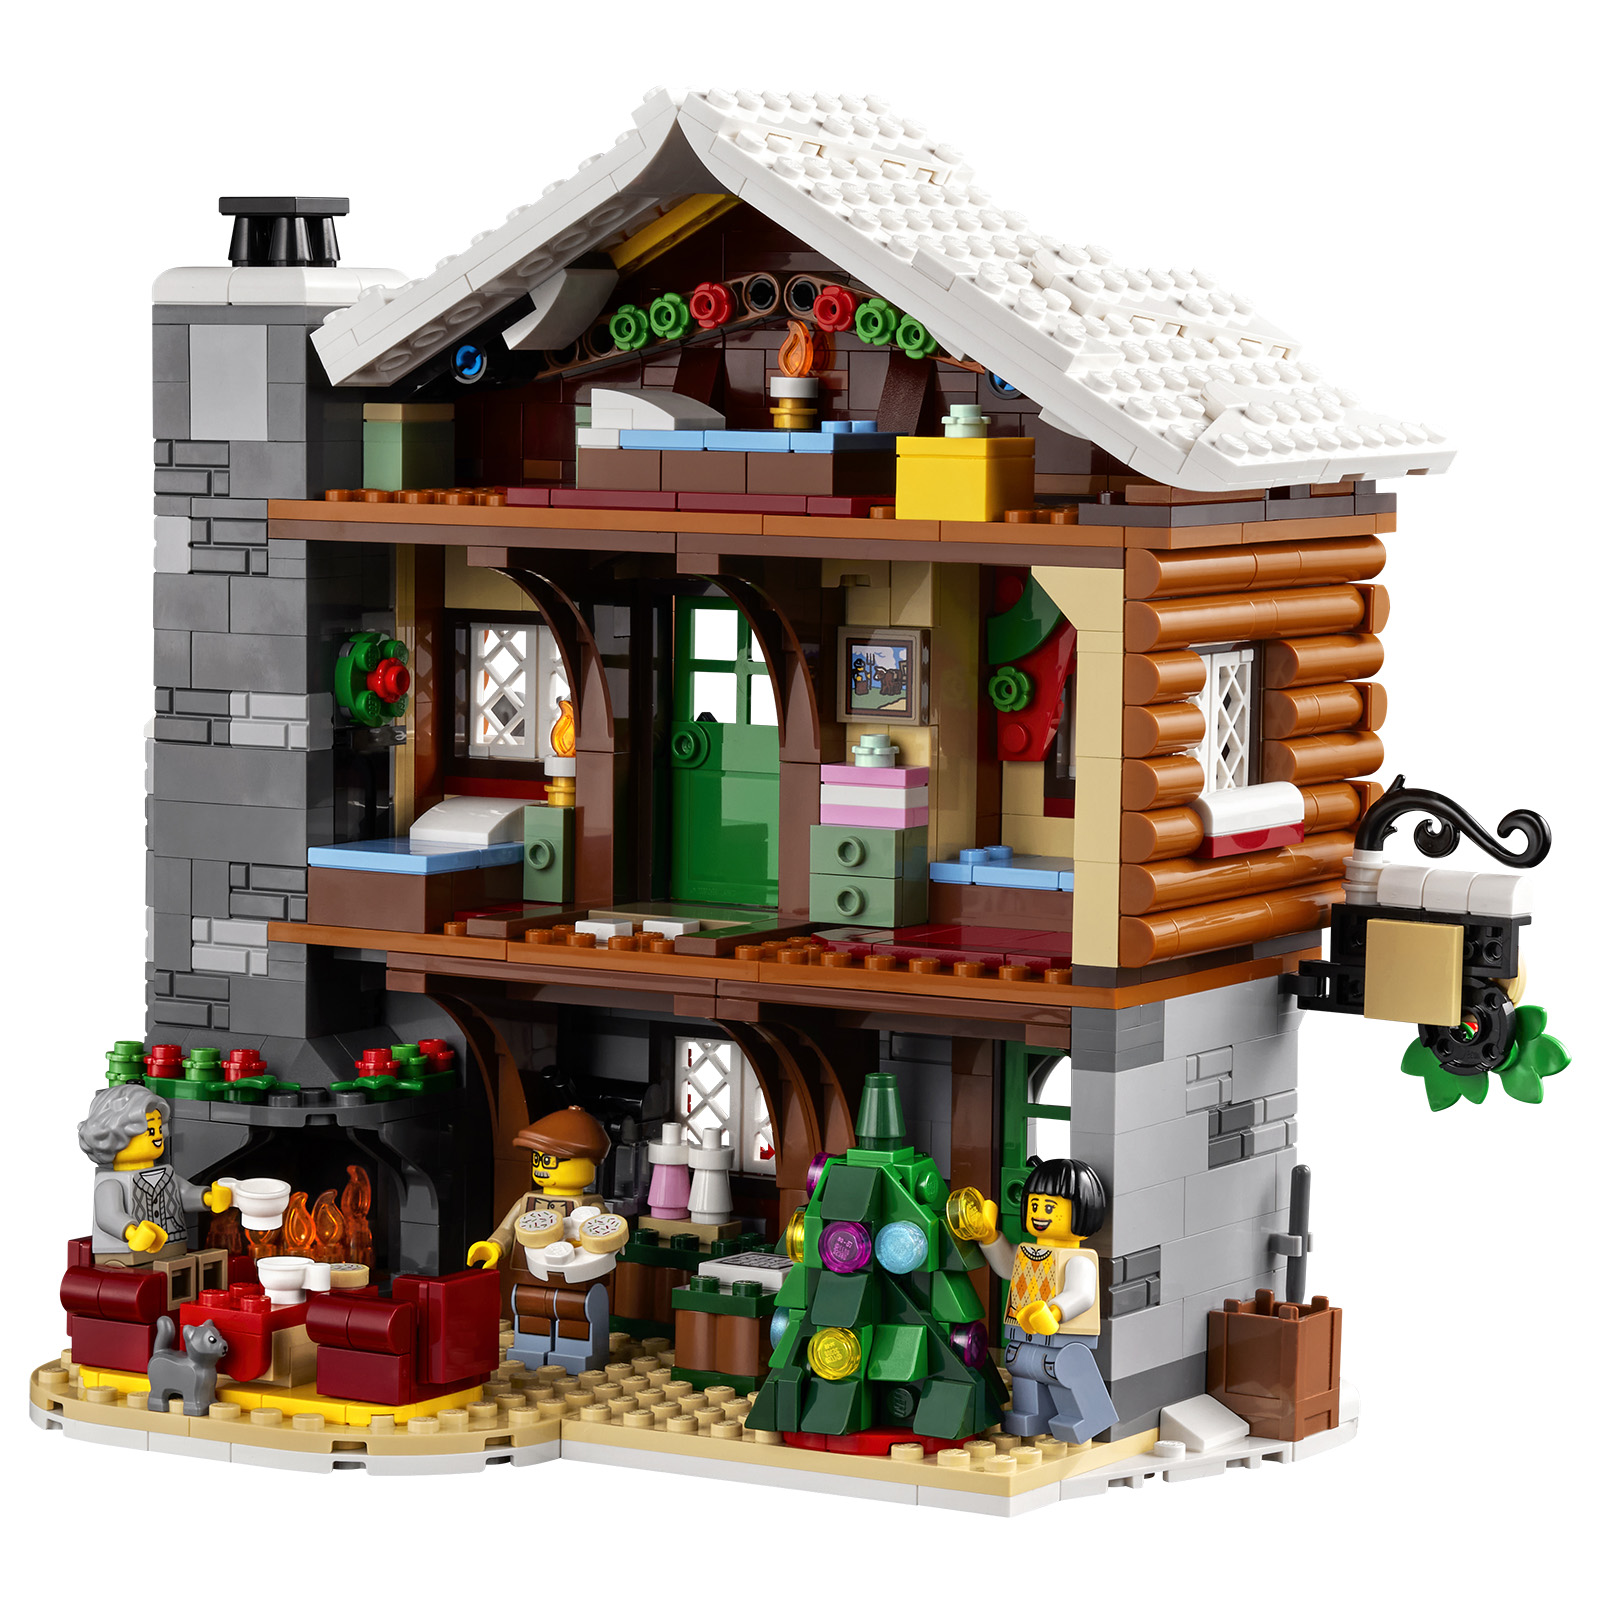 LEGO IDEAS - The Alpine Refuge